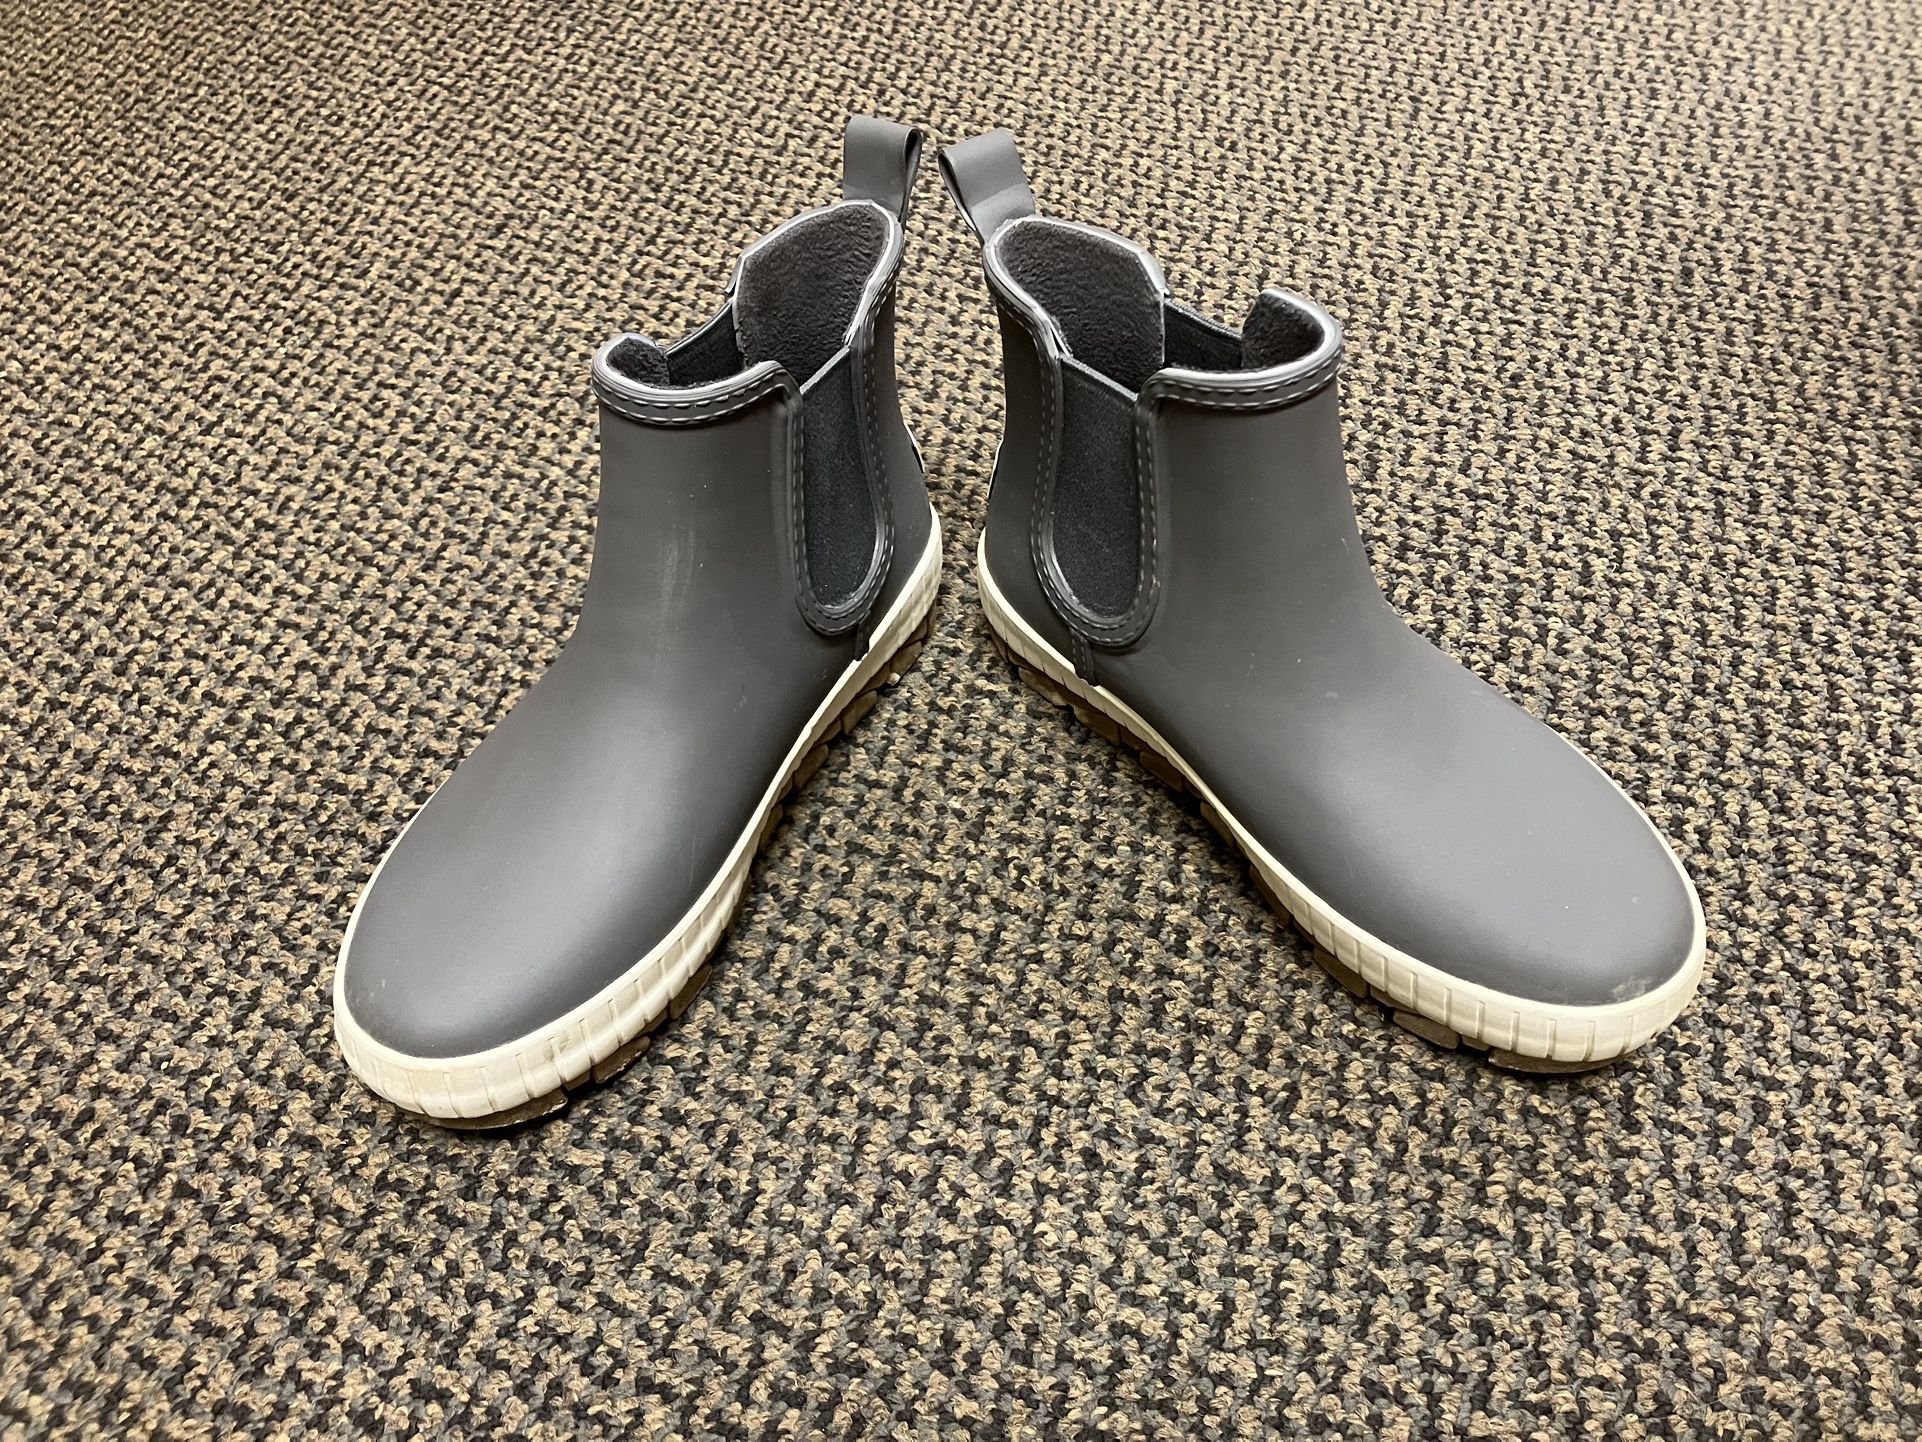 Sperry Rain Boots 6.5 Women’s